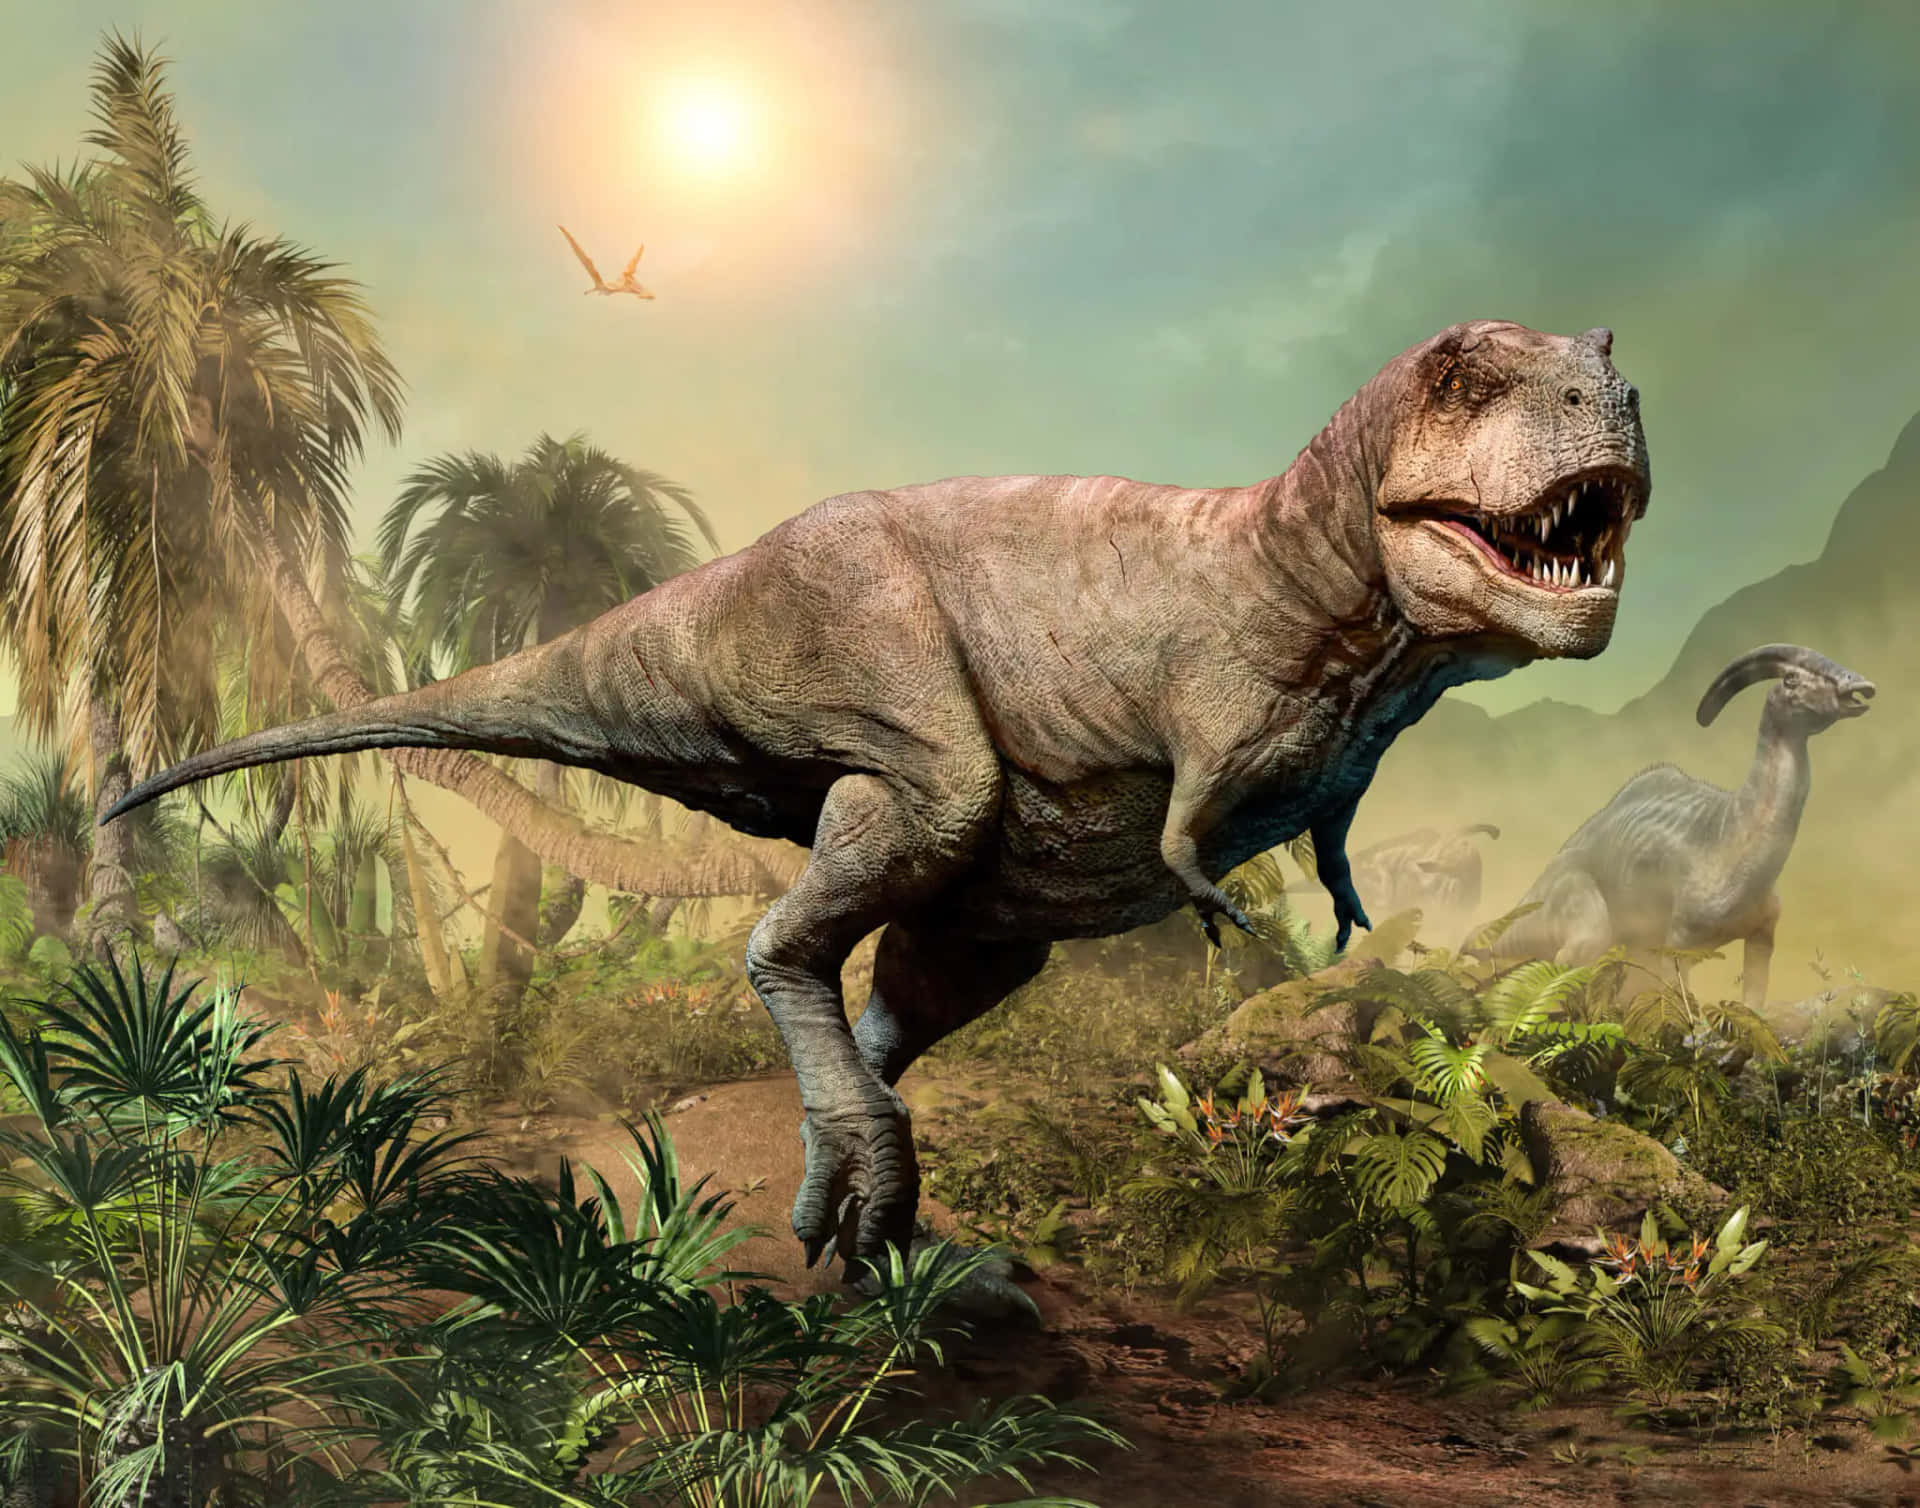 Einewilde Kreatur, Der T-rex, Streift Mit Stärke Und Dominanz Über Die Erde.